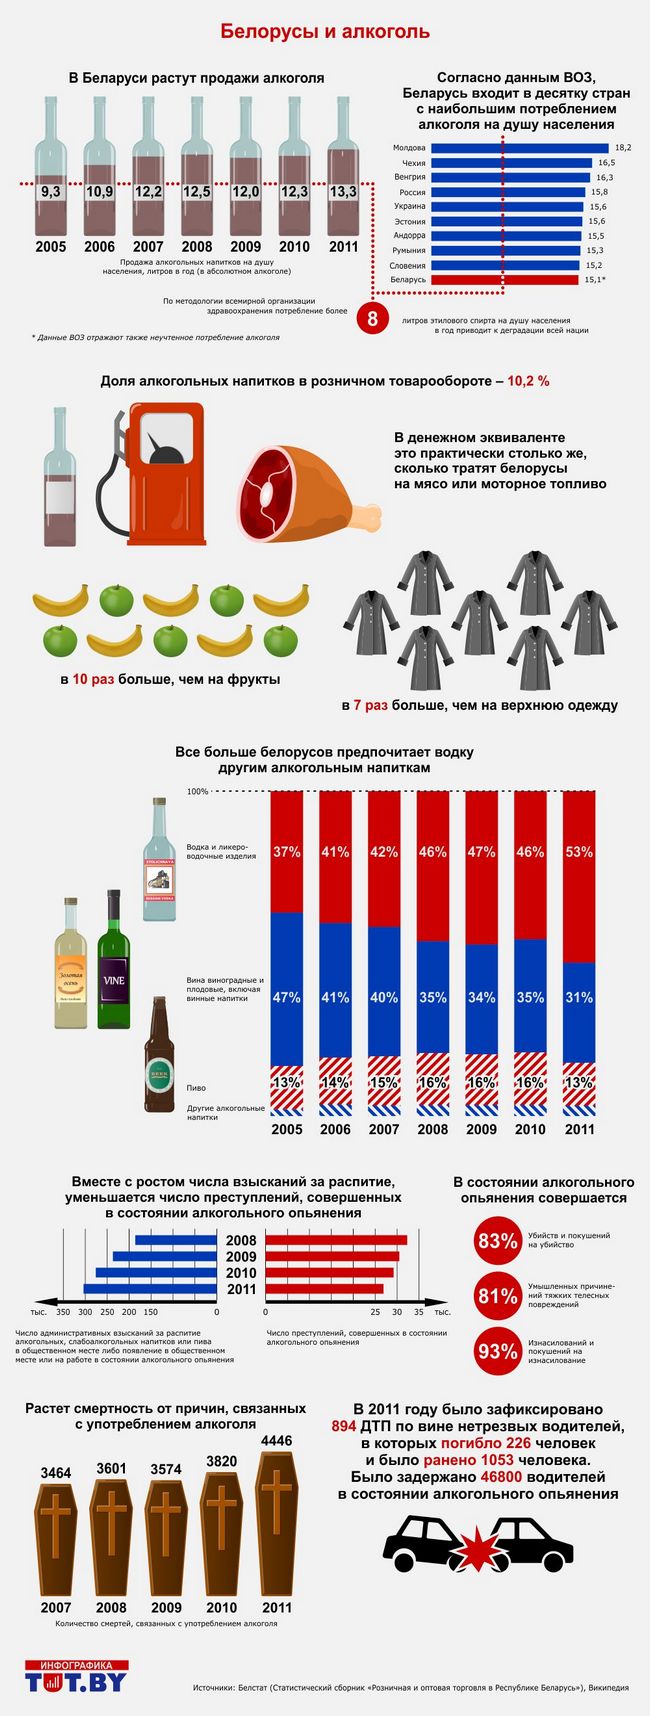 Потребление алкогольных напитков. Статистика преступлений алкоголь. Спиртные напитки Беларуси.